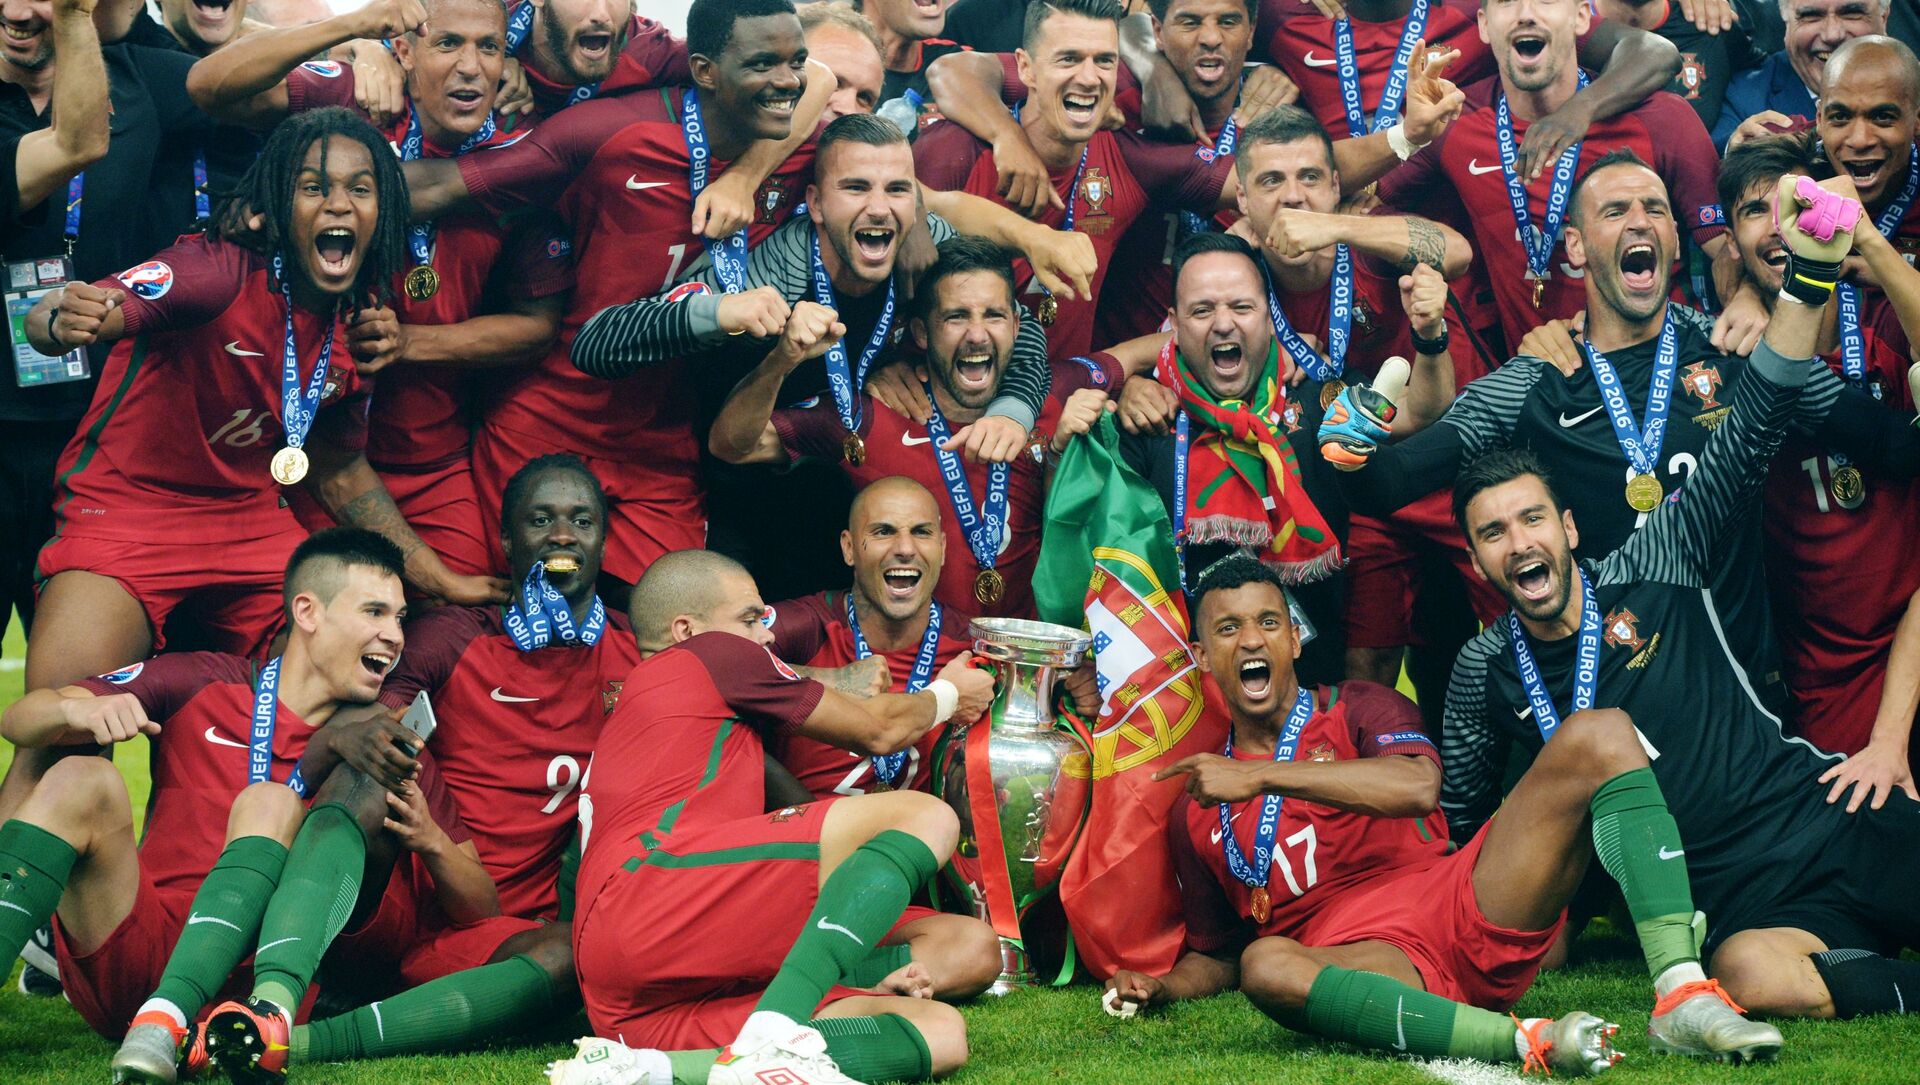 لاعبو فريق كرة القدم البرتغالي خلال مراسم الاحتفال بالفوز بلقب بطل أوروبا يورو 2016 - سبوتنيك عربي, 1920, 24.09.2021